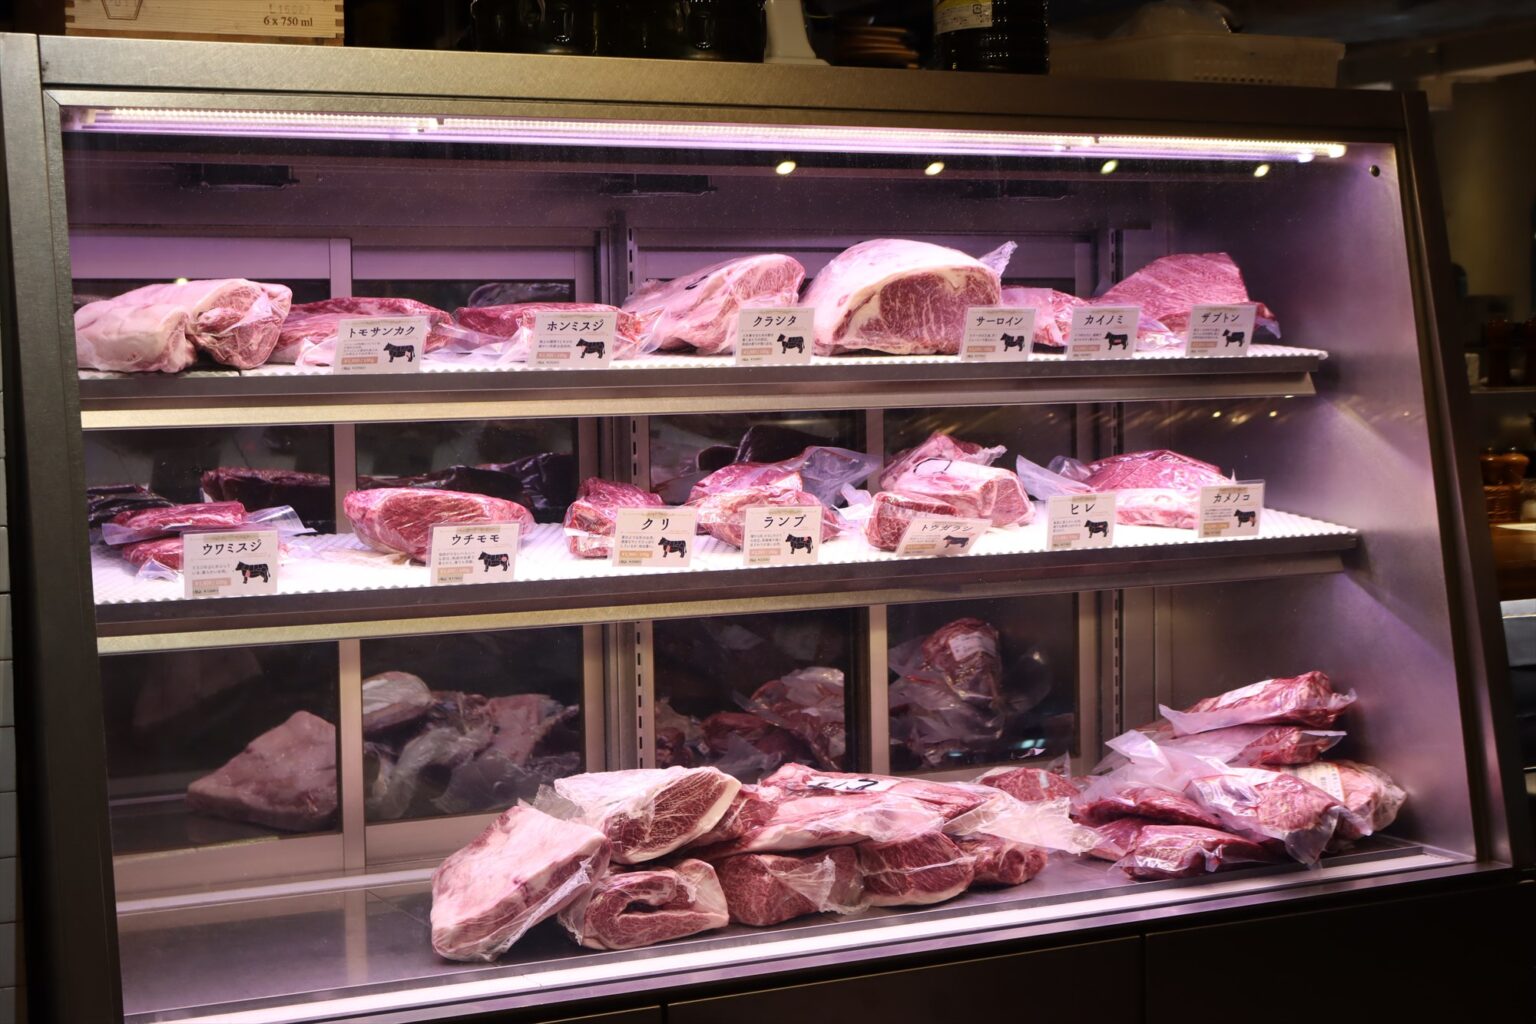 〈エイジング・ビーフ〉にはステーキ店〈グリルドエイジング・ビーフ〉も隣接。エレベーターを降りてすぐに見えるガラスケースには熟成肉がずらり。